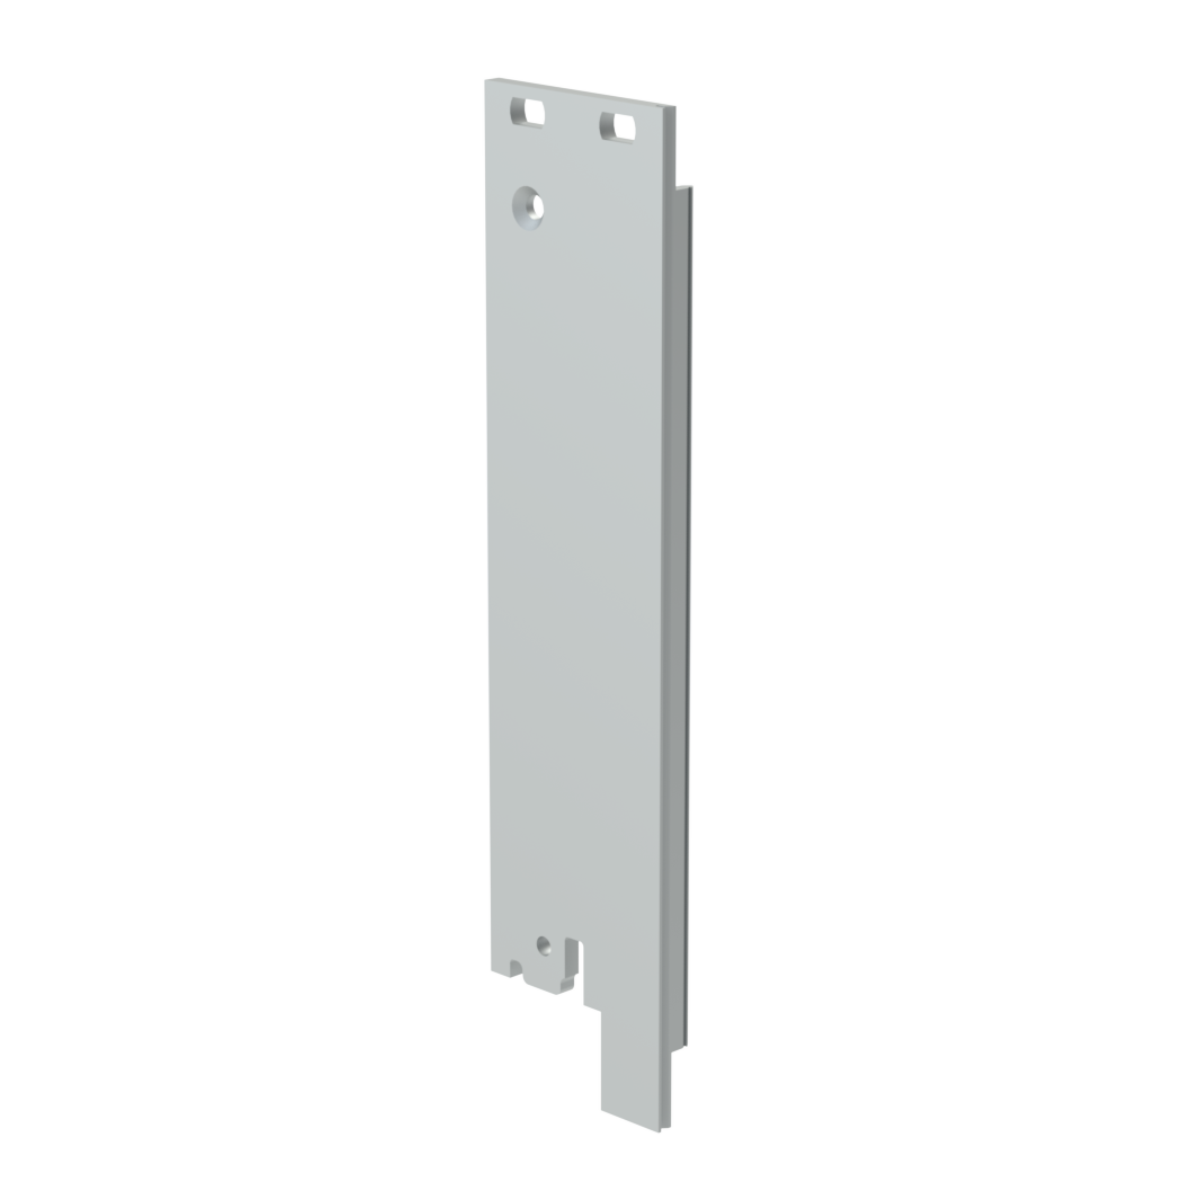 Лицевая панель U-образная 3U6HP под инжектор-экстрактор тип V-2/V-W низ